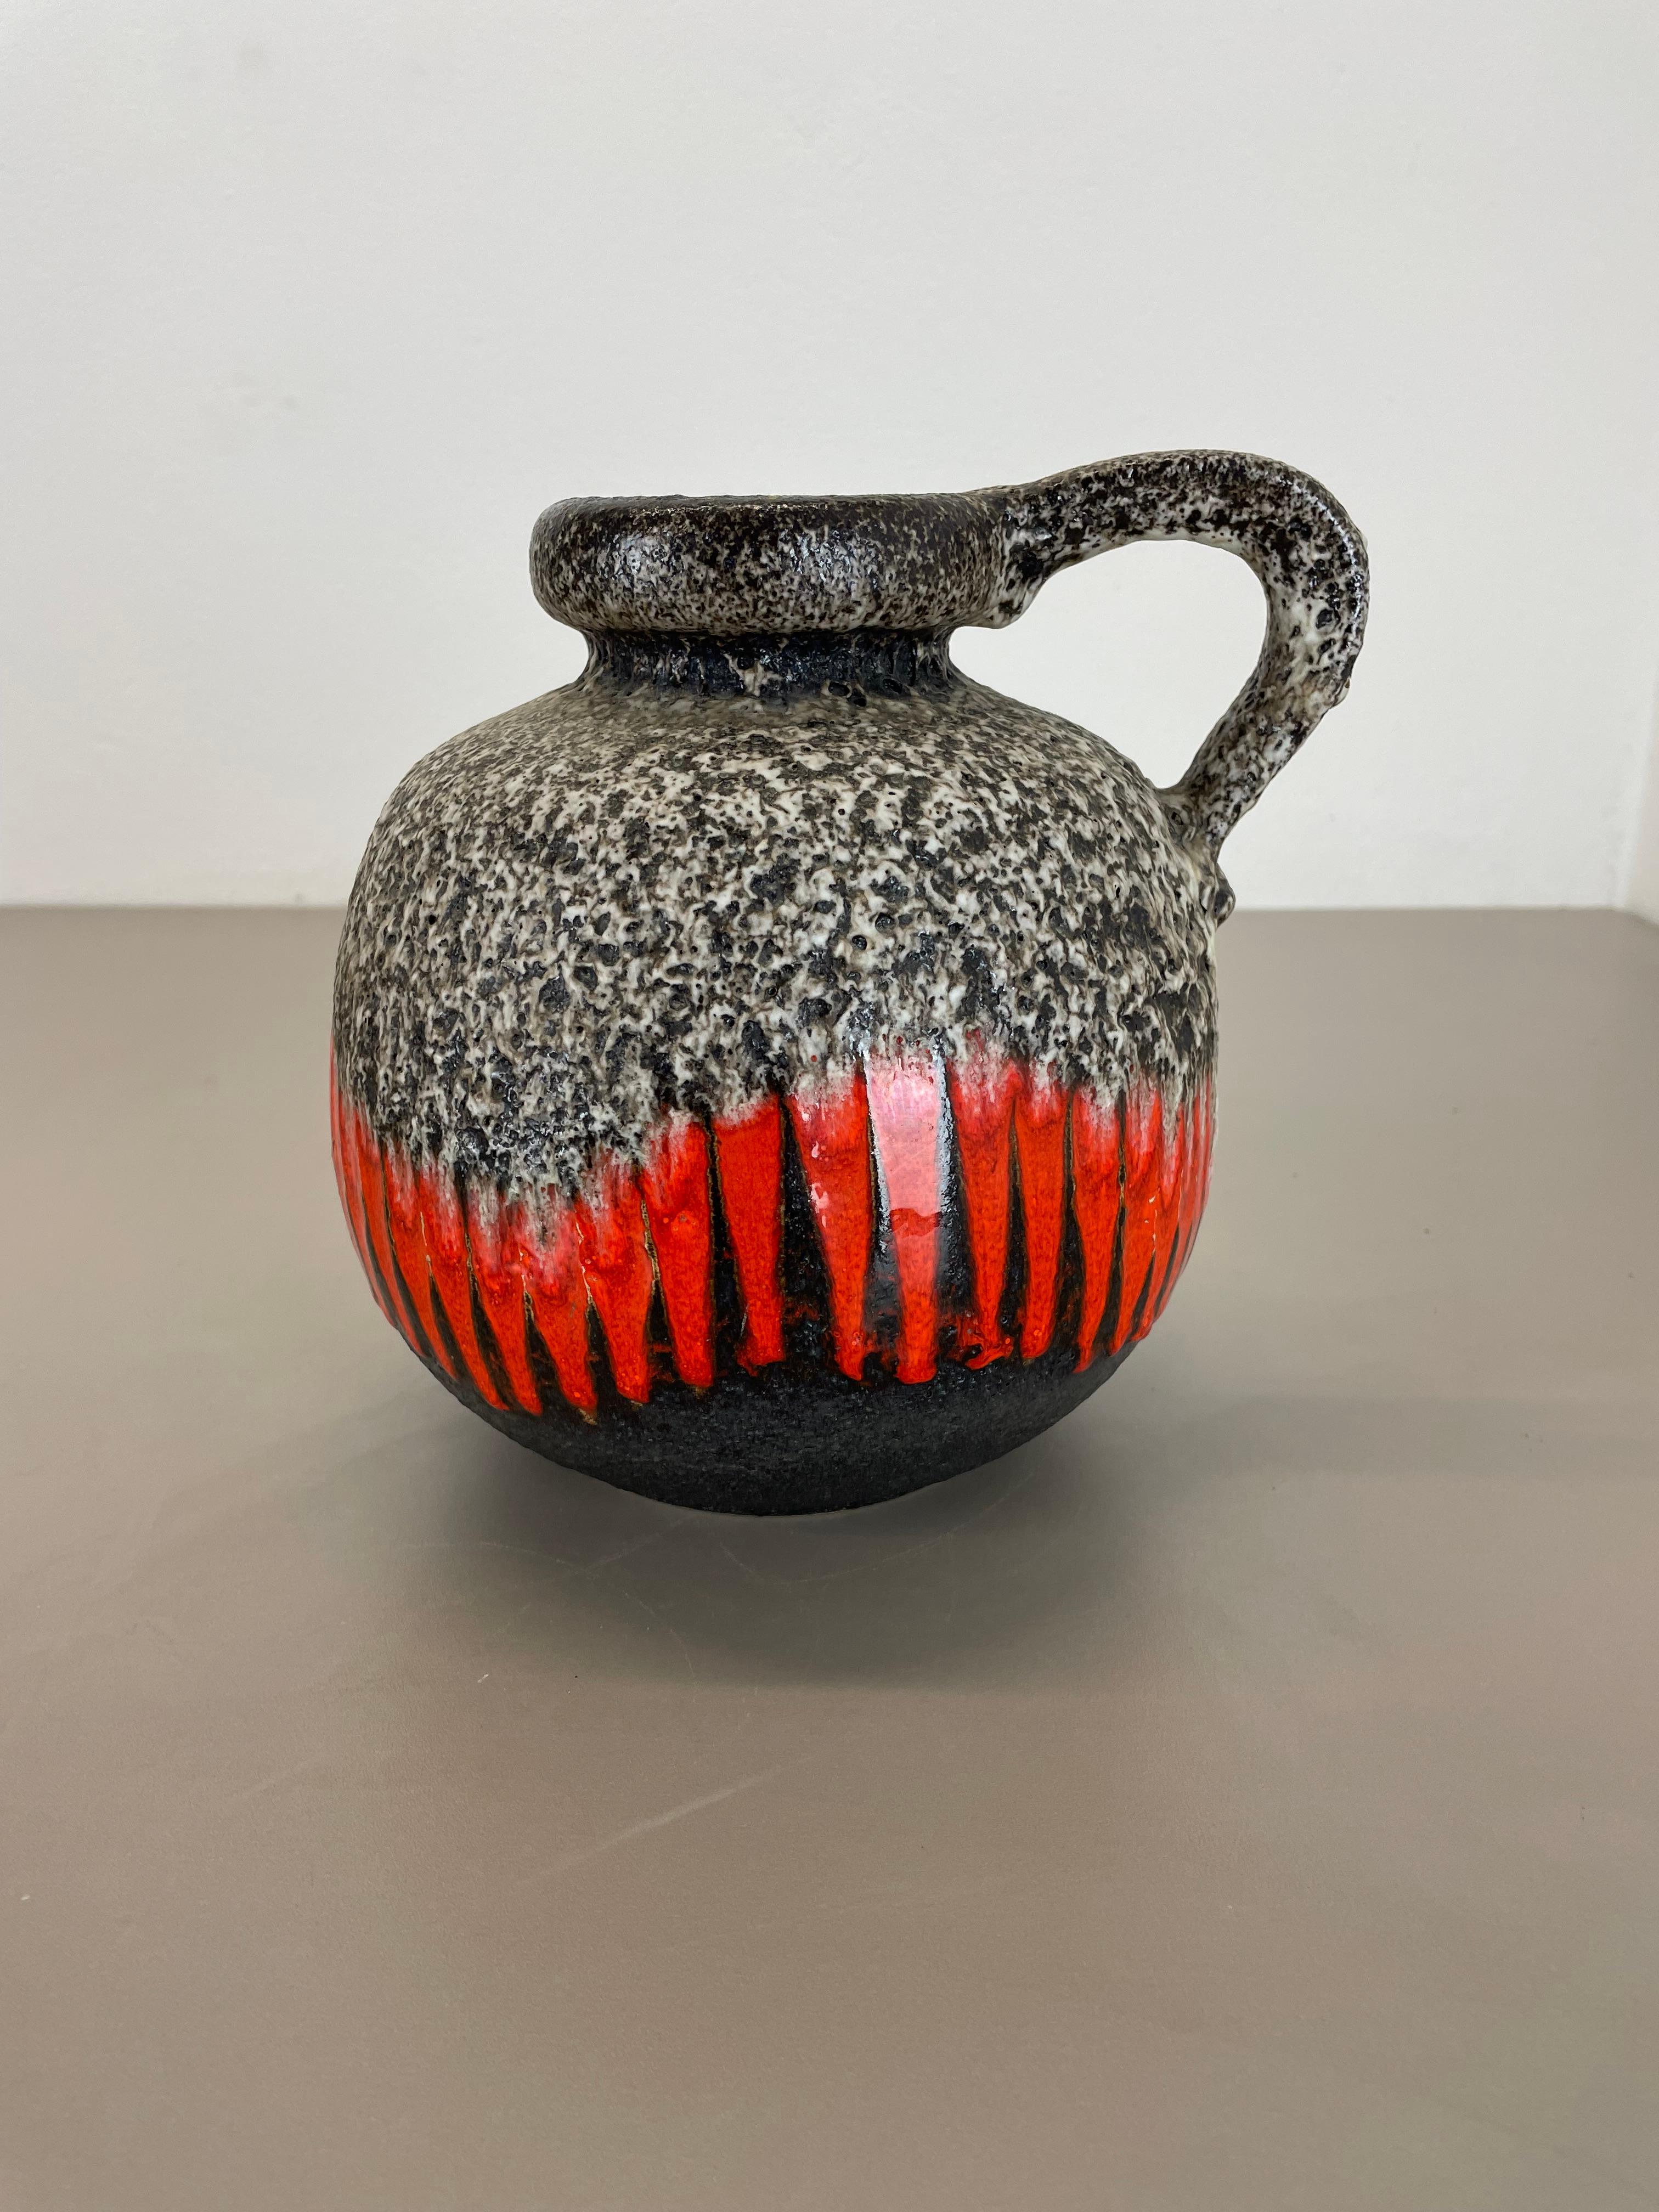 Article :

Vase d'art en lave grasse ZIG ZAG



Producteur :

Scheurich, Allemagne



Décennie :

1970s




Ce vase vintage original a été produit dans les années 1970 en Allemagne. Il est réalisé en poterie céramique dans une optique de lave grasse